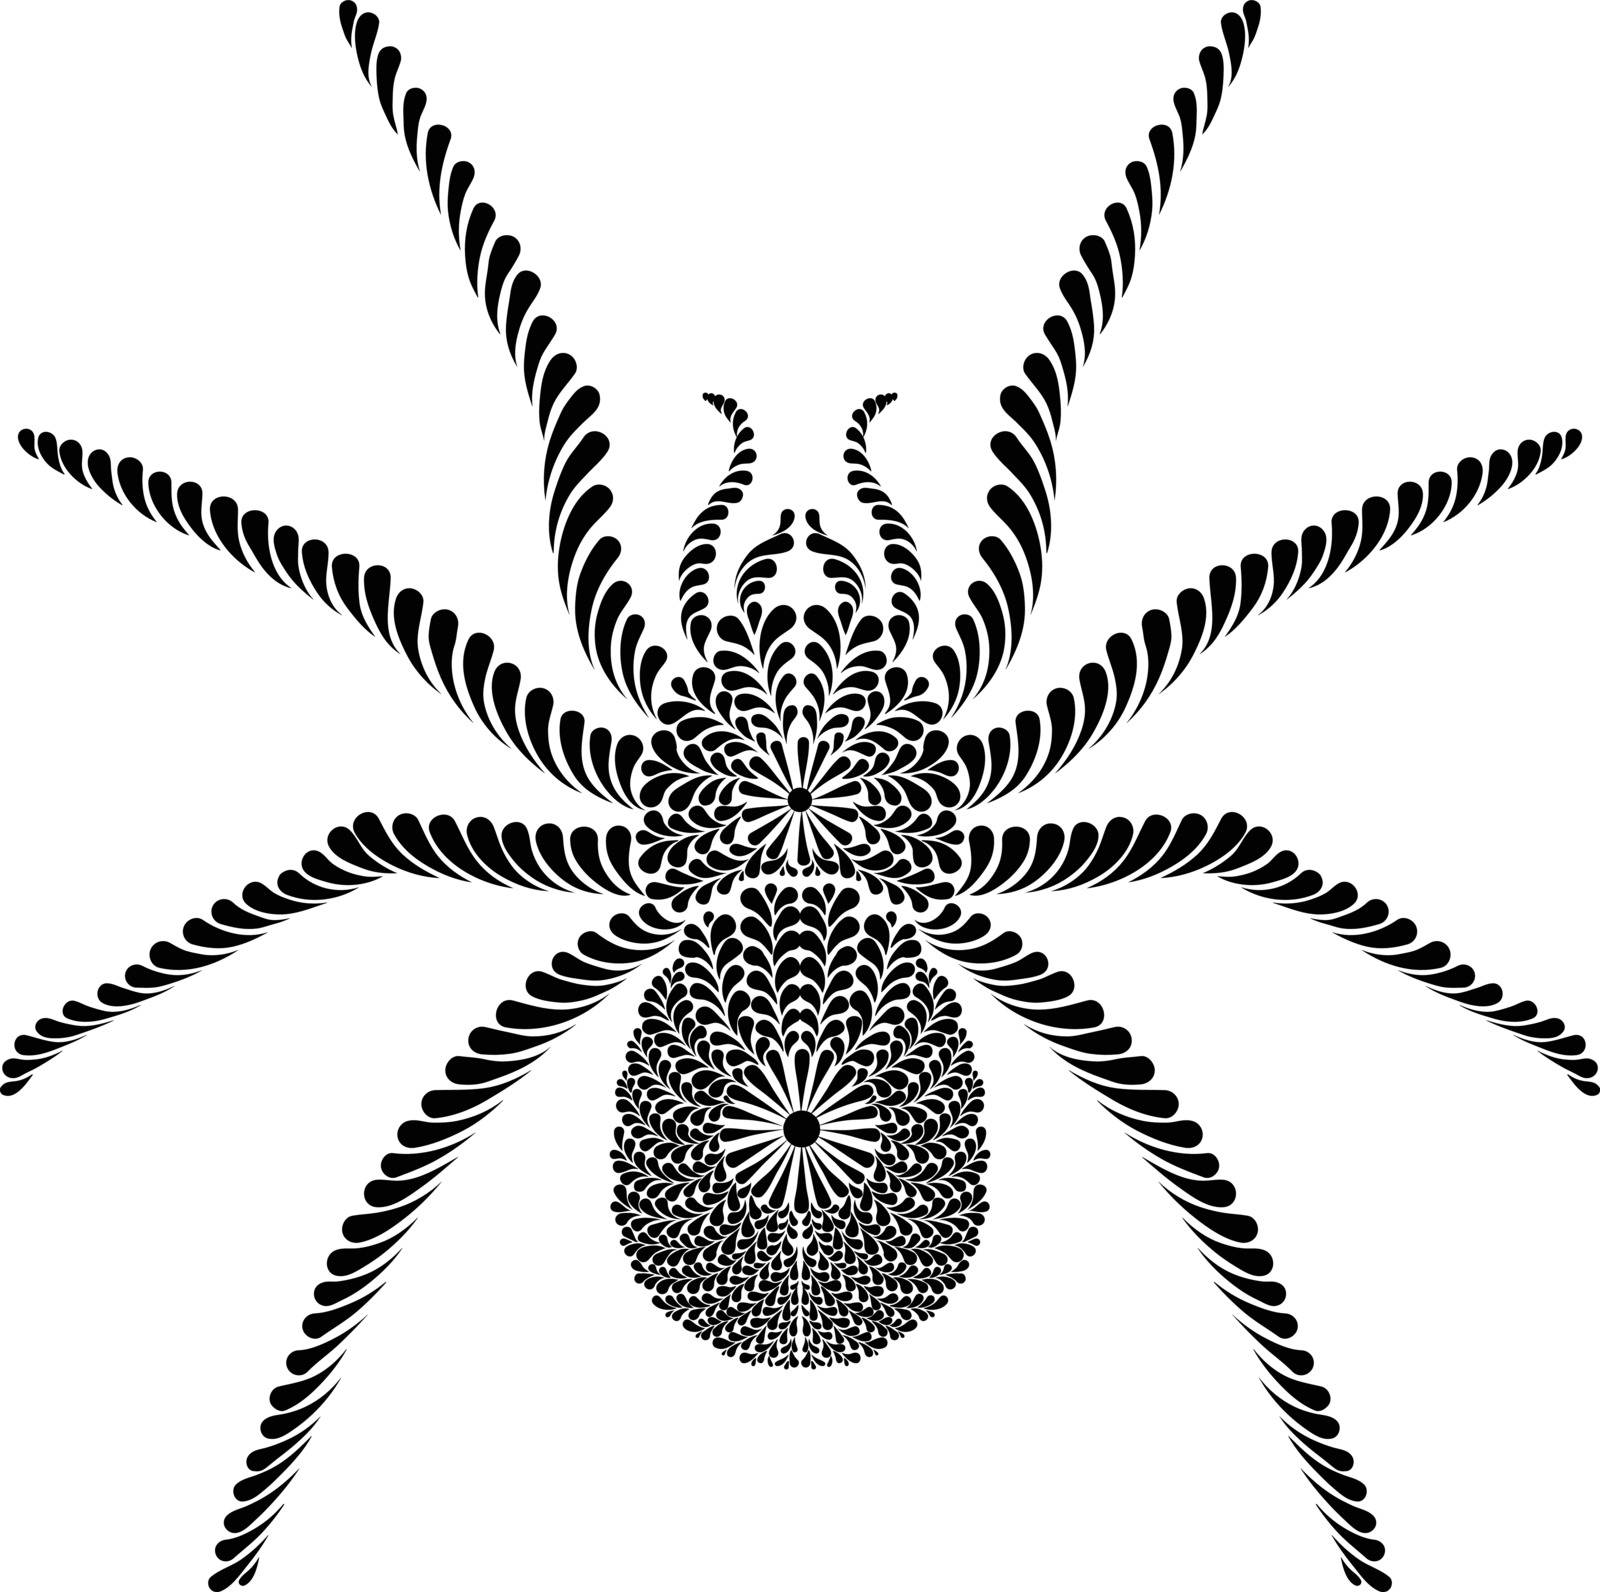 Stylish black tattoo spider isolated on white background